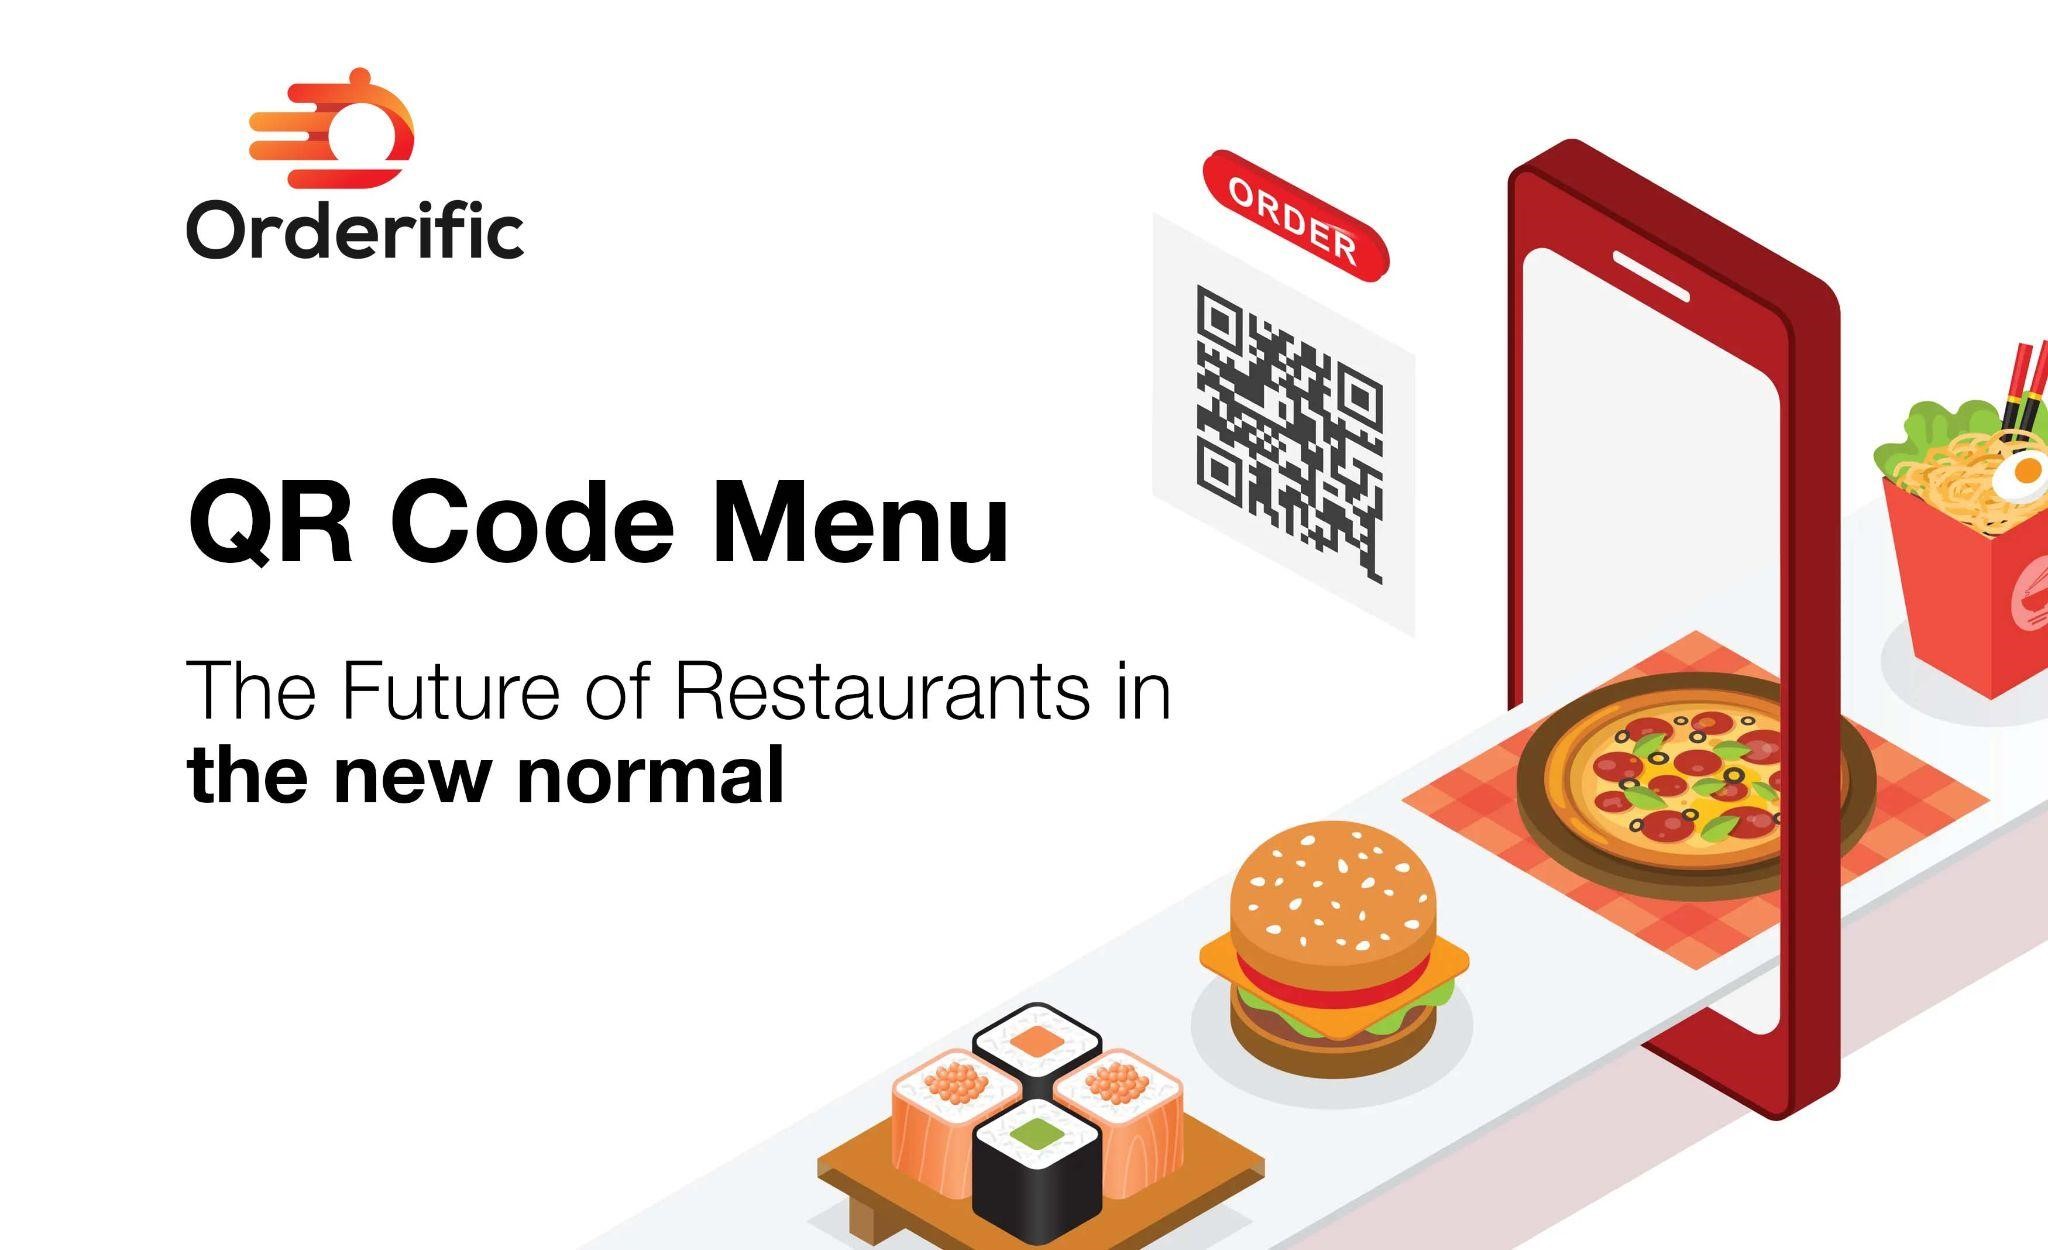 How to Create a QR Code Menu For a Restaurant?